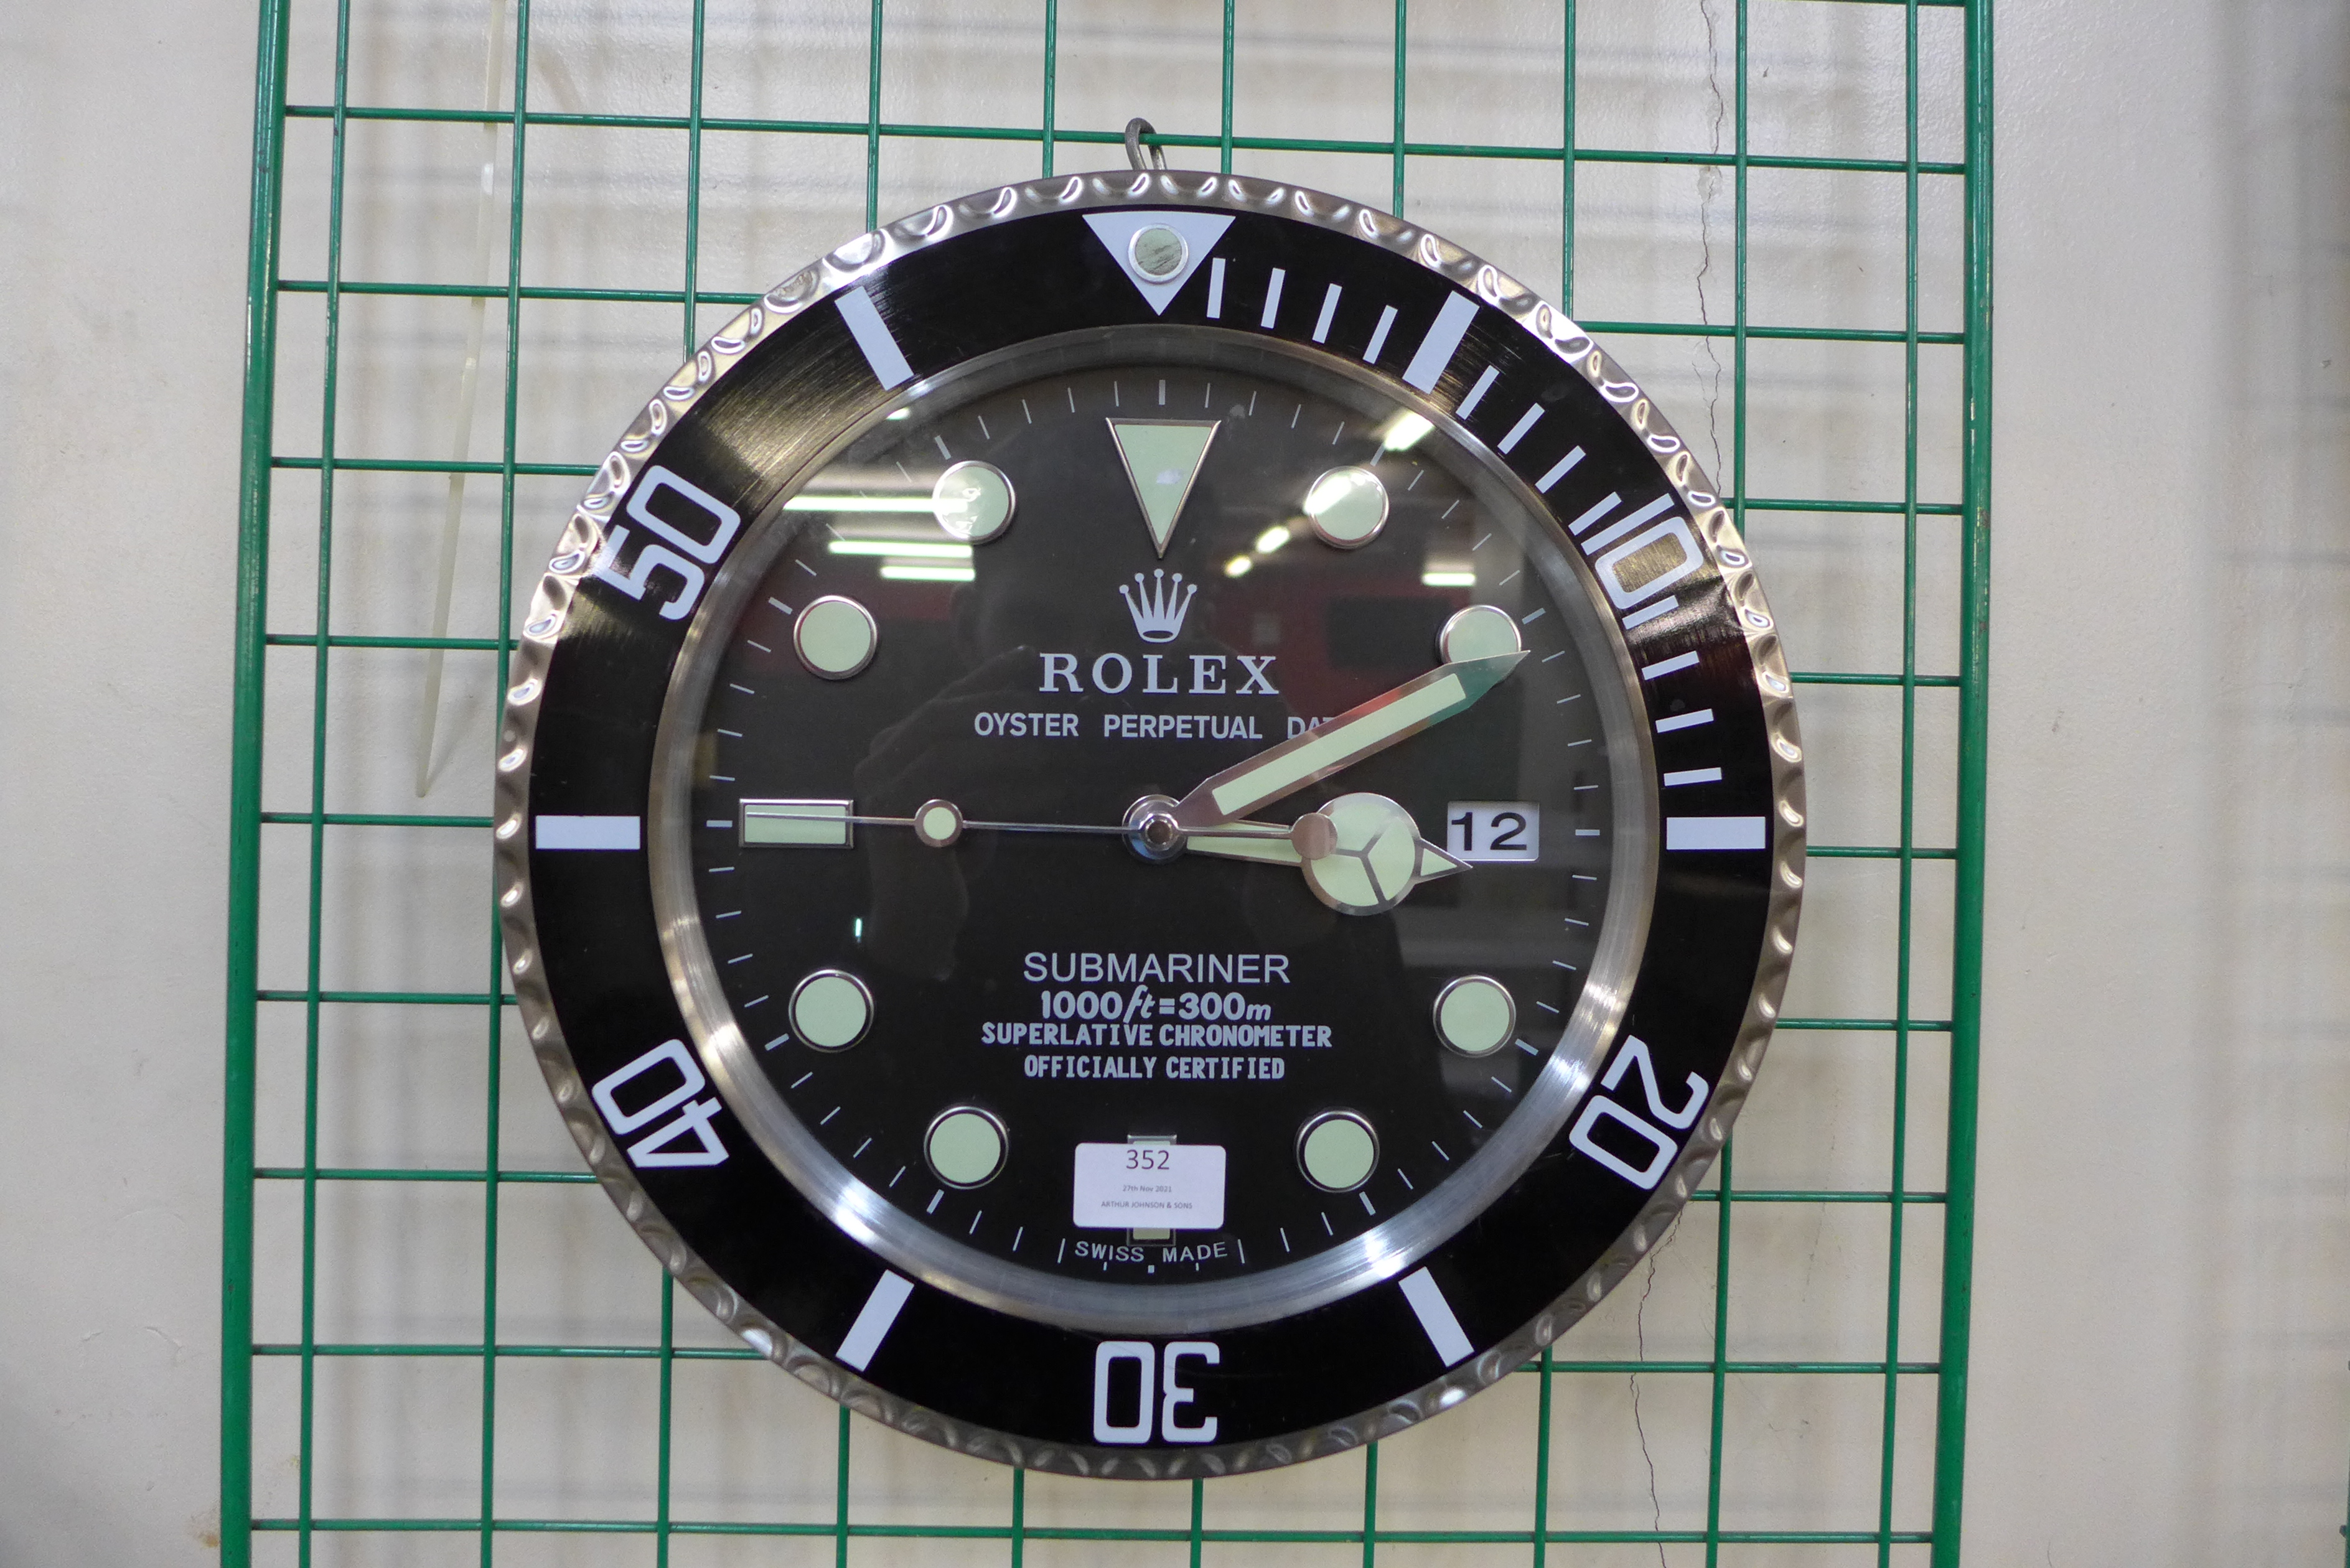 A Rolex style dealer's circular wall clock